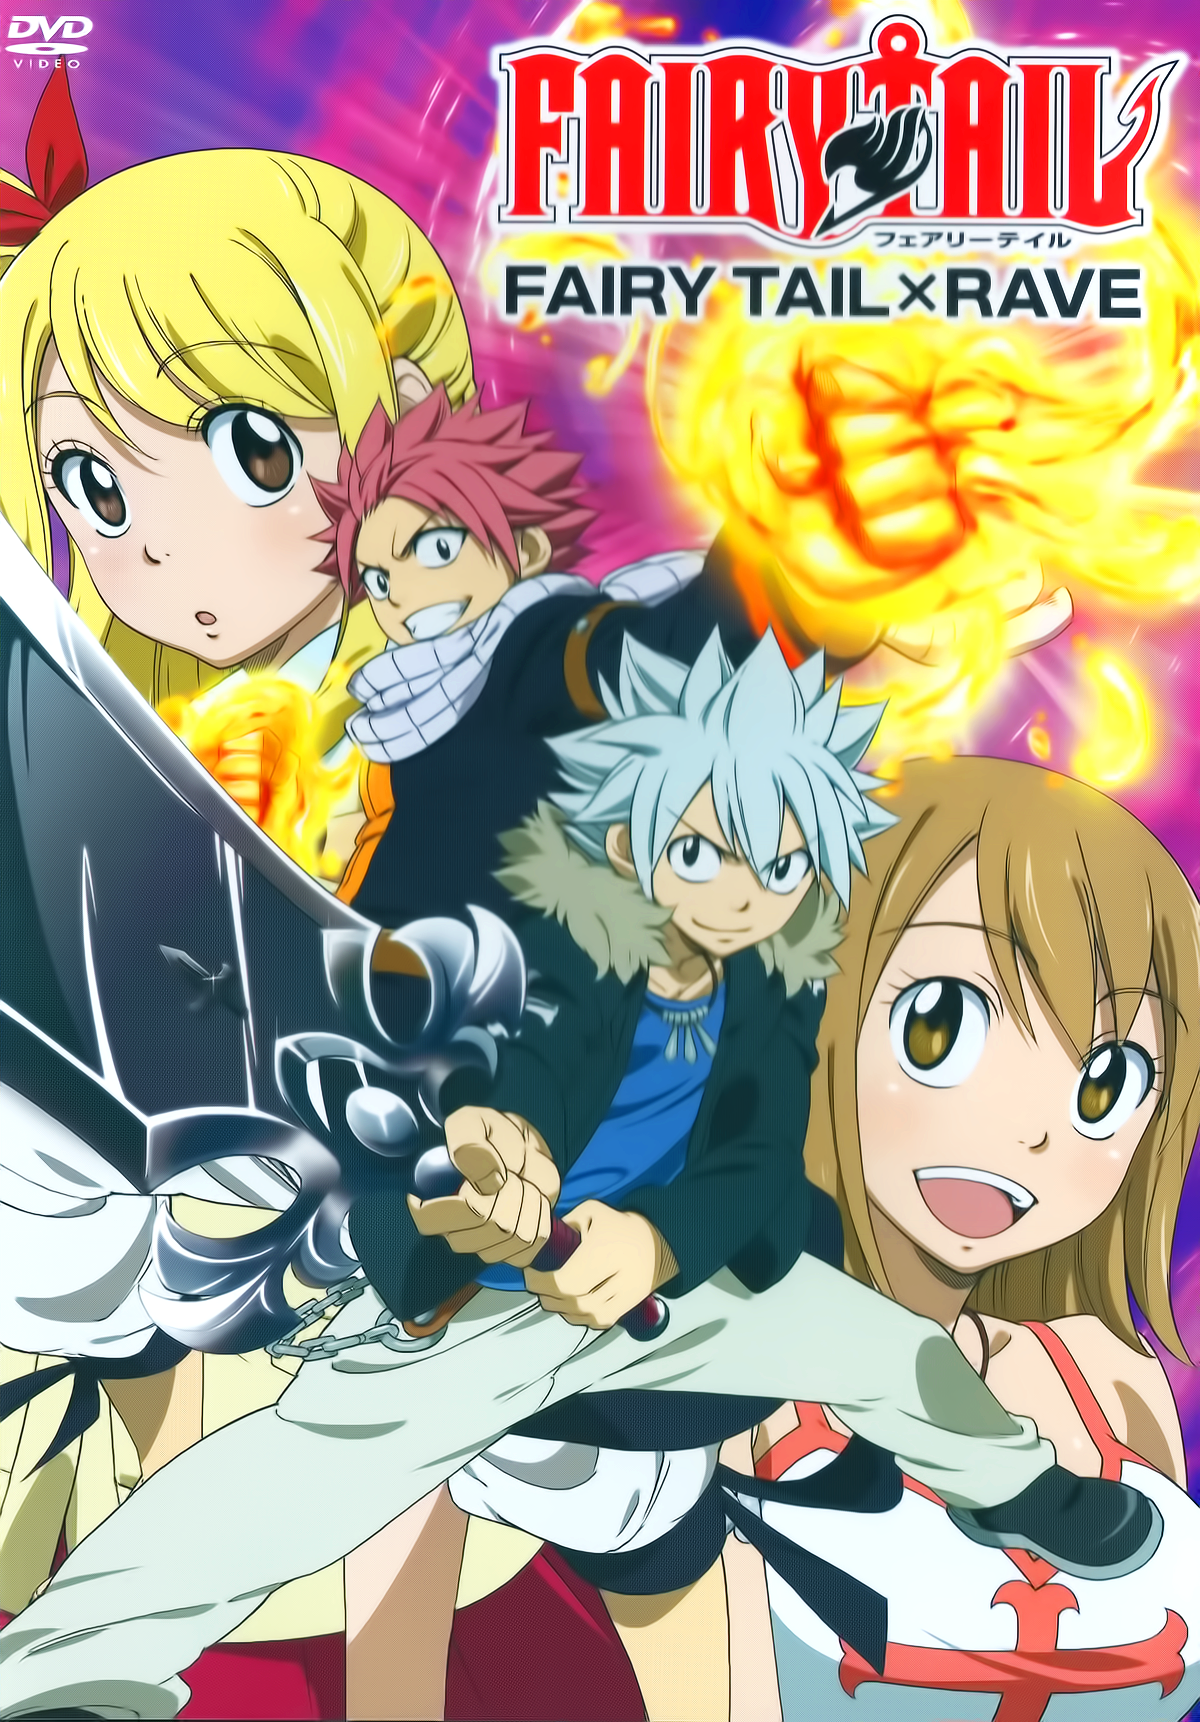 Fairy Tail Ova 5 English Dub